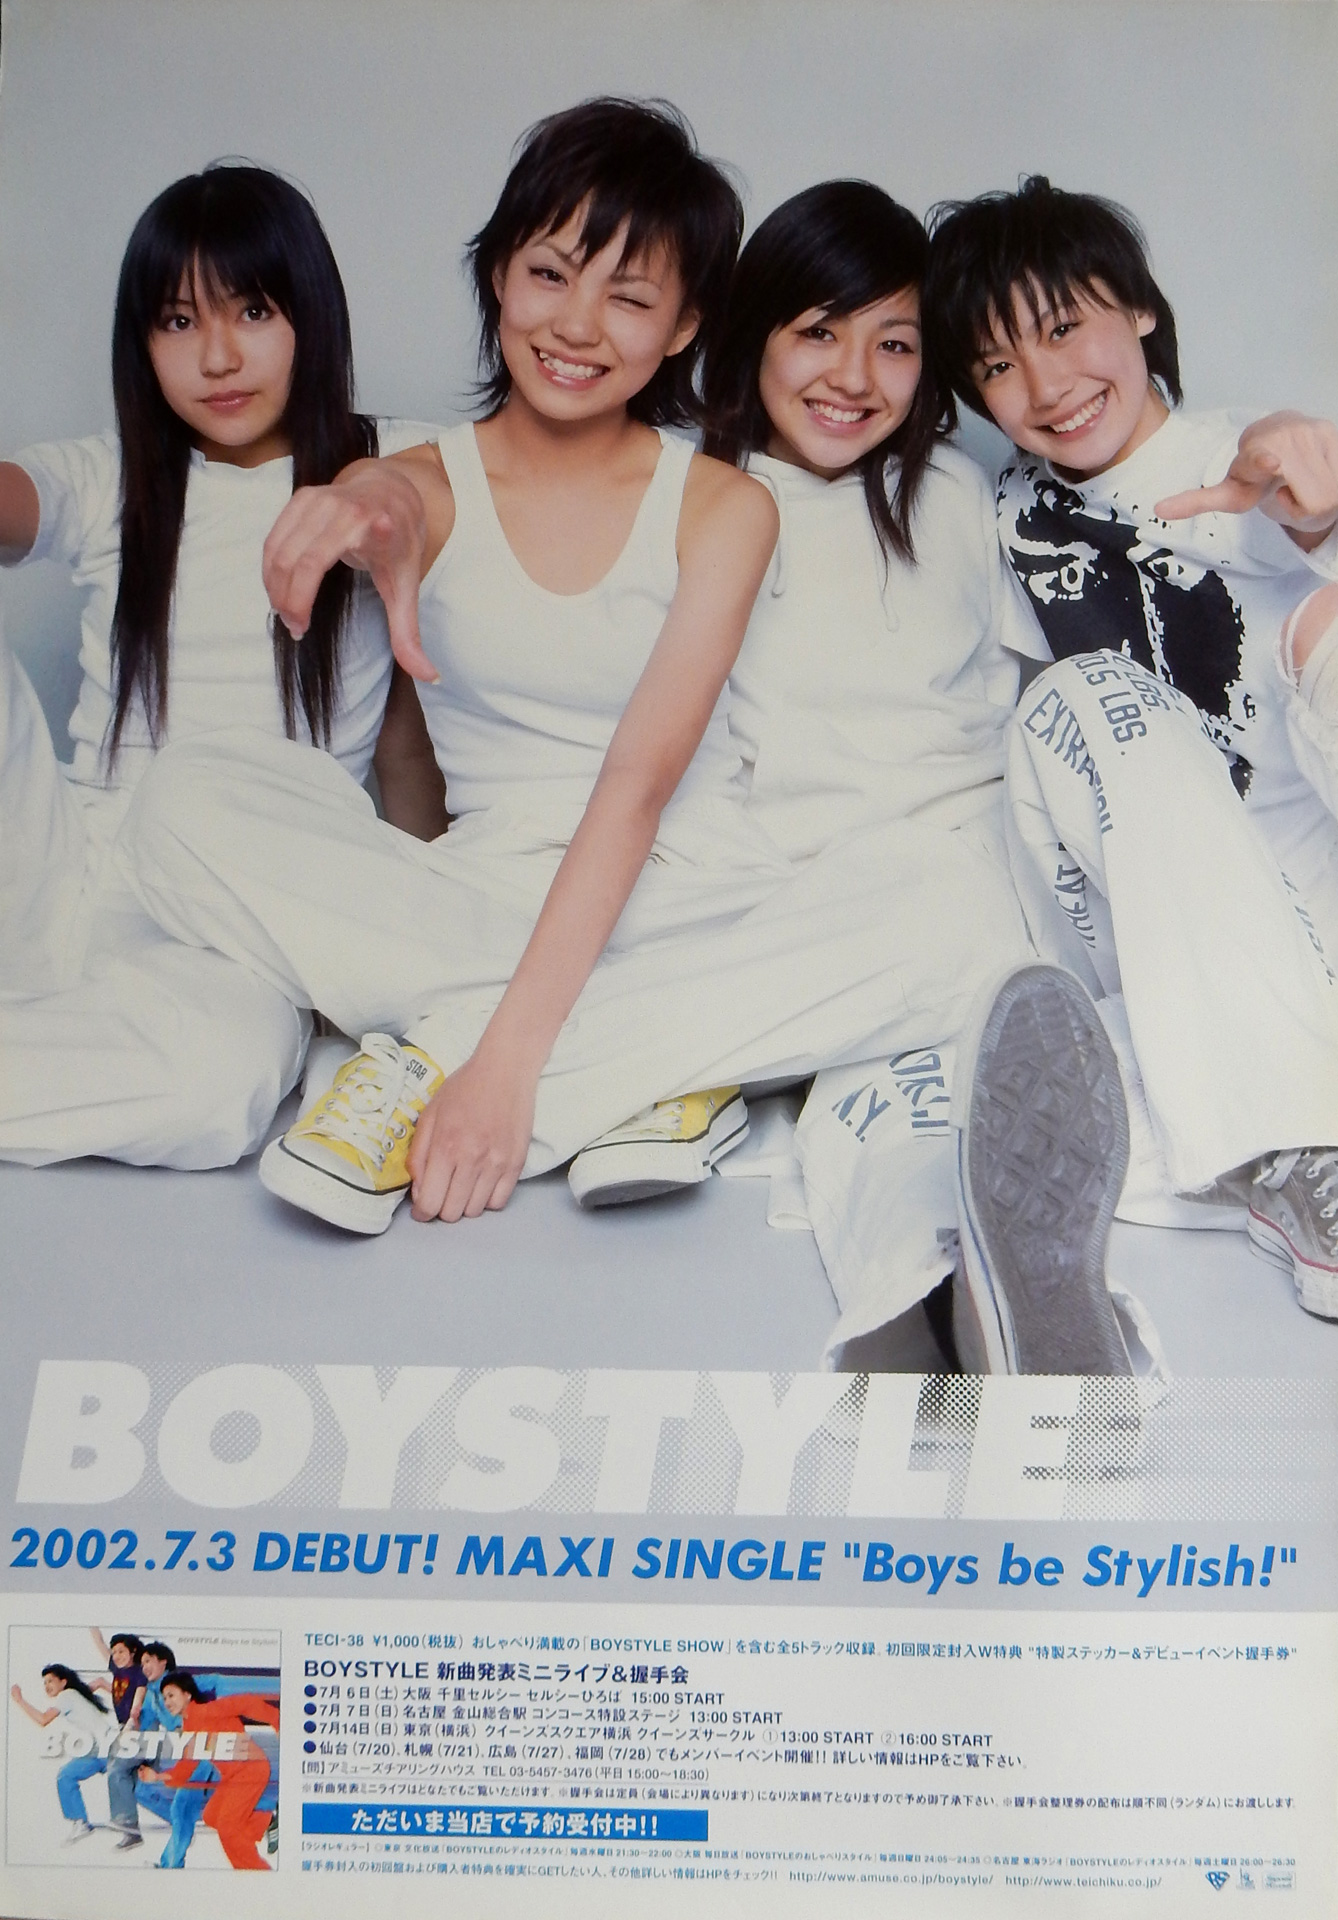 BOYSTYLE 「Boys be Stylish!」のポスター